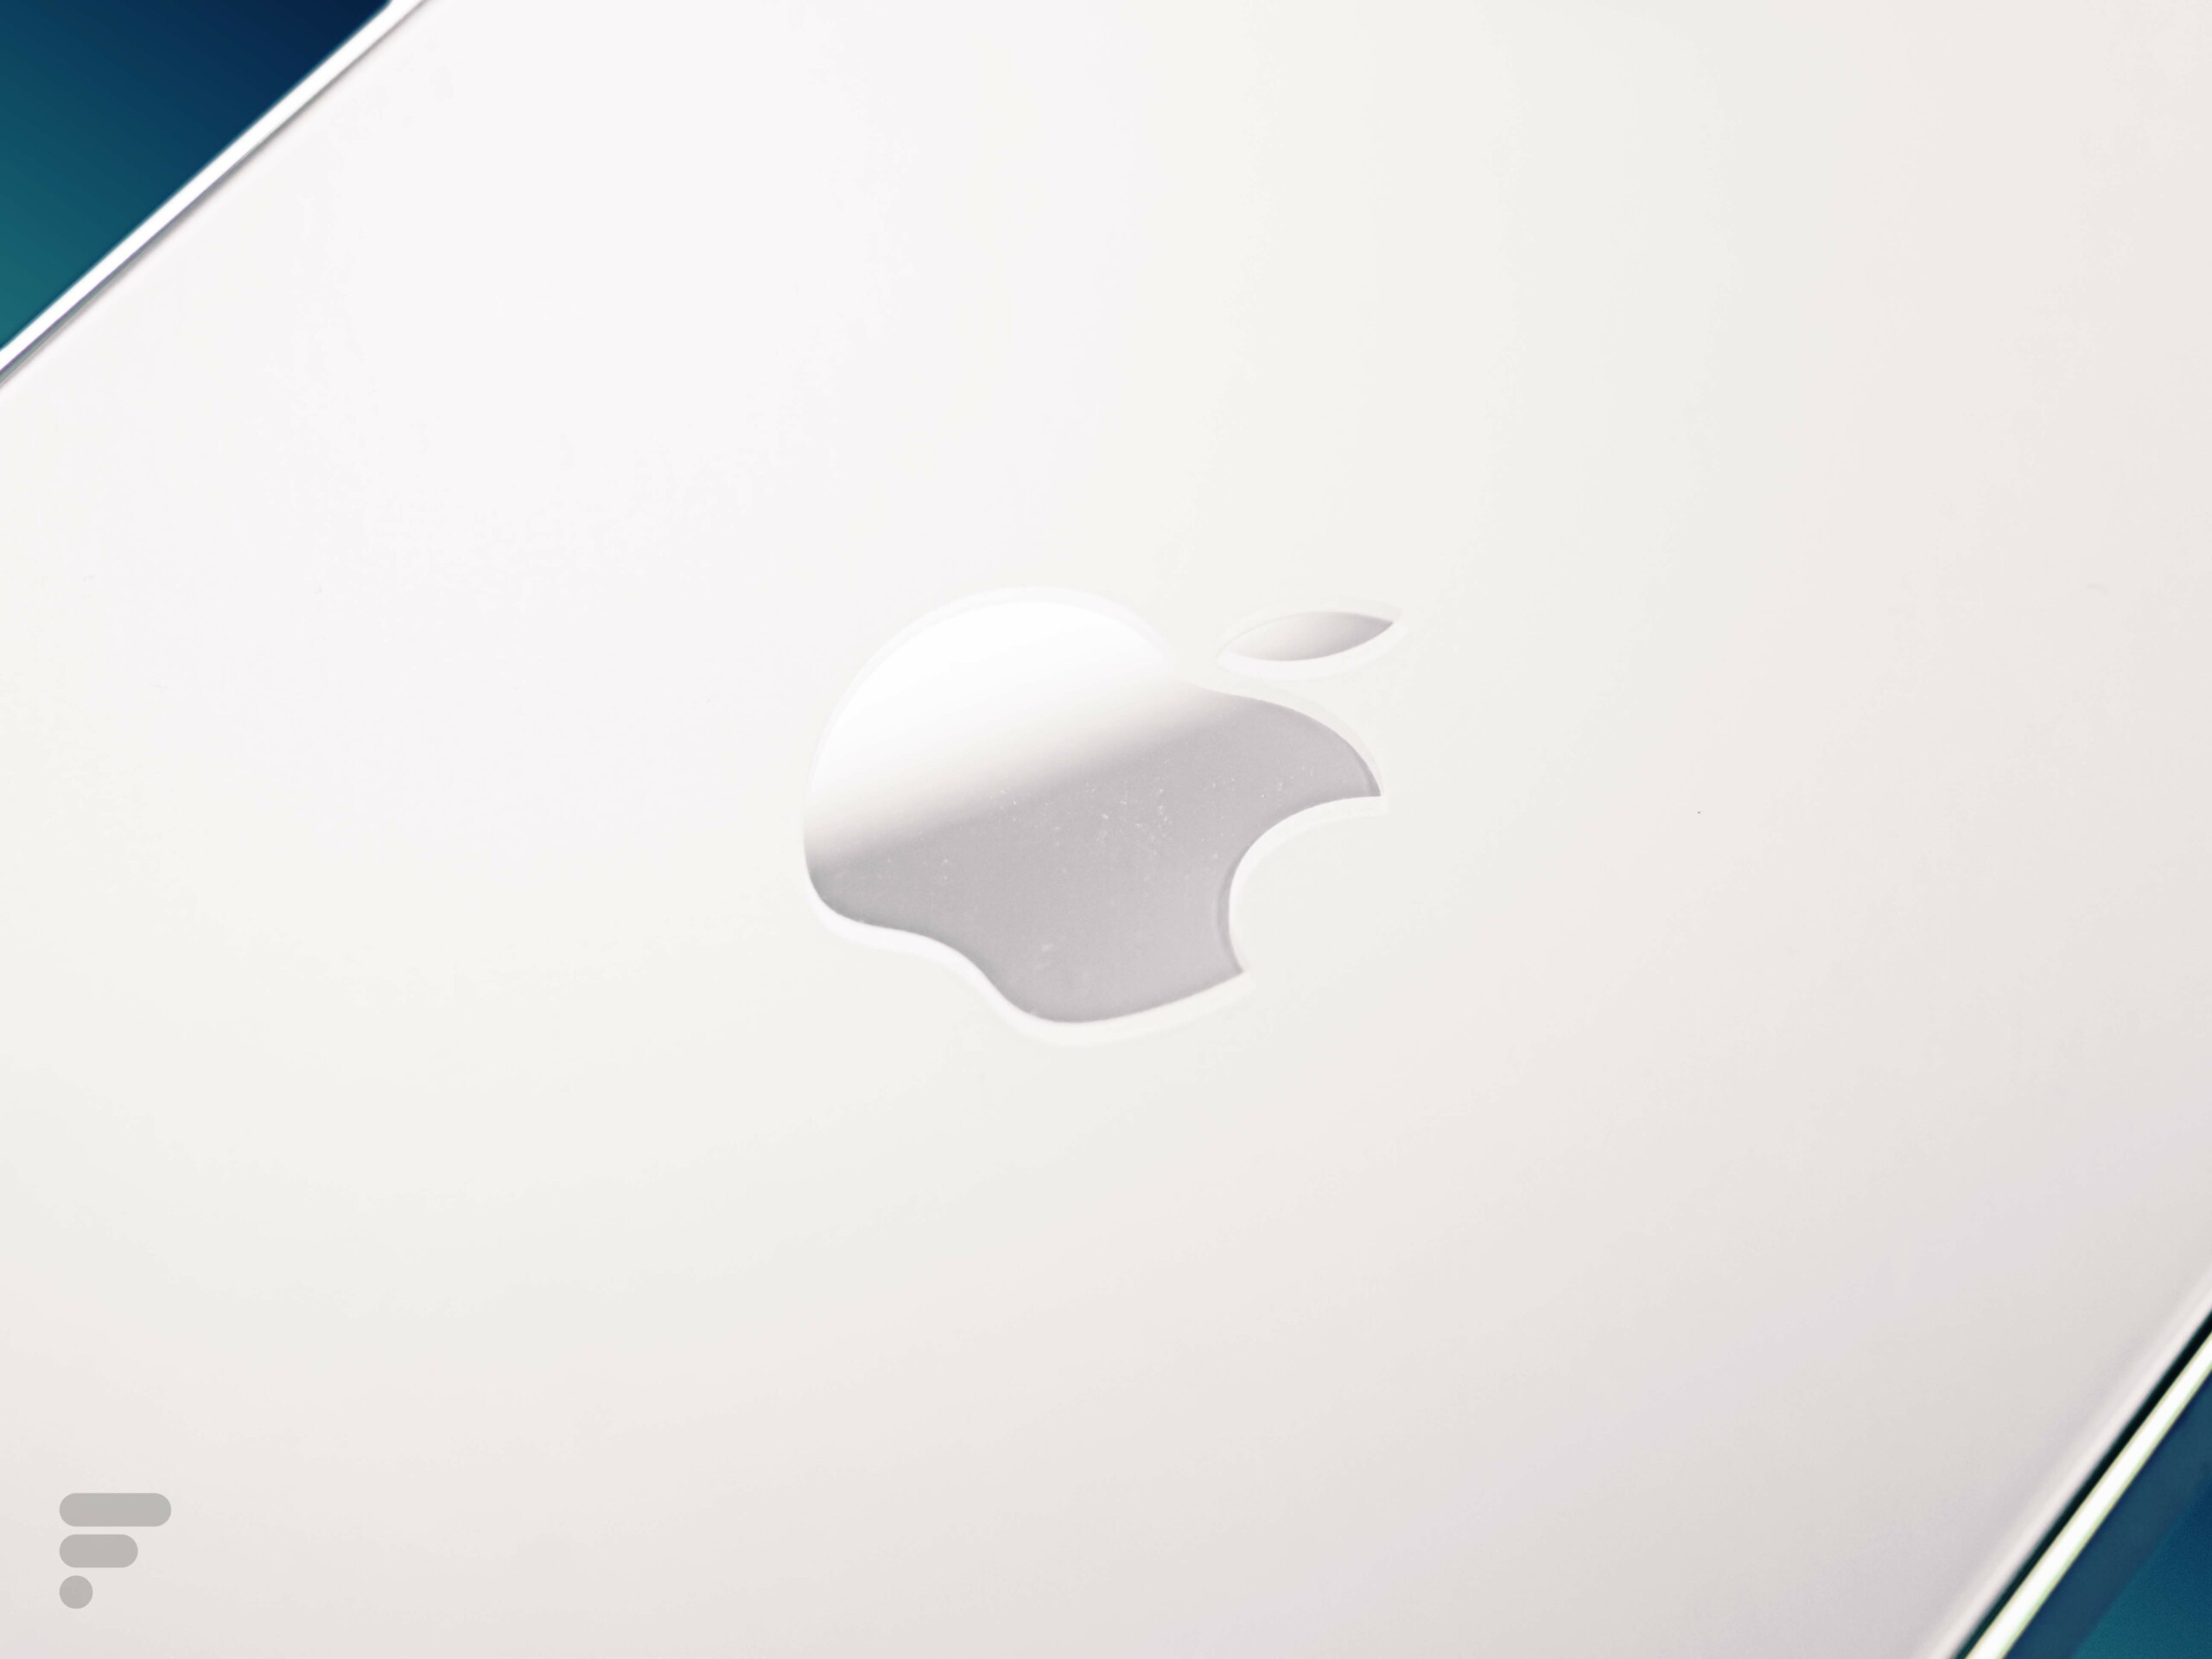 La pomme au dos de l'iPhone 12 Pro